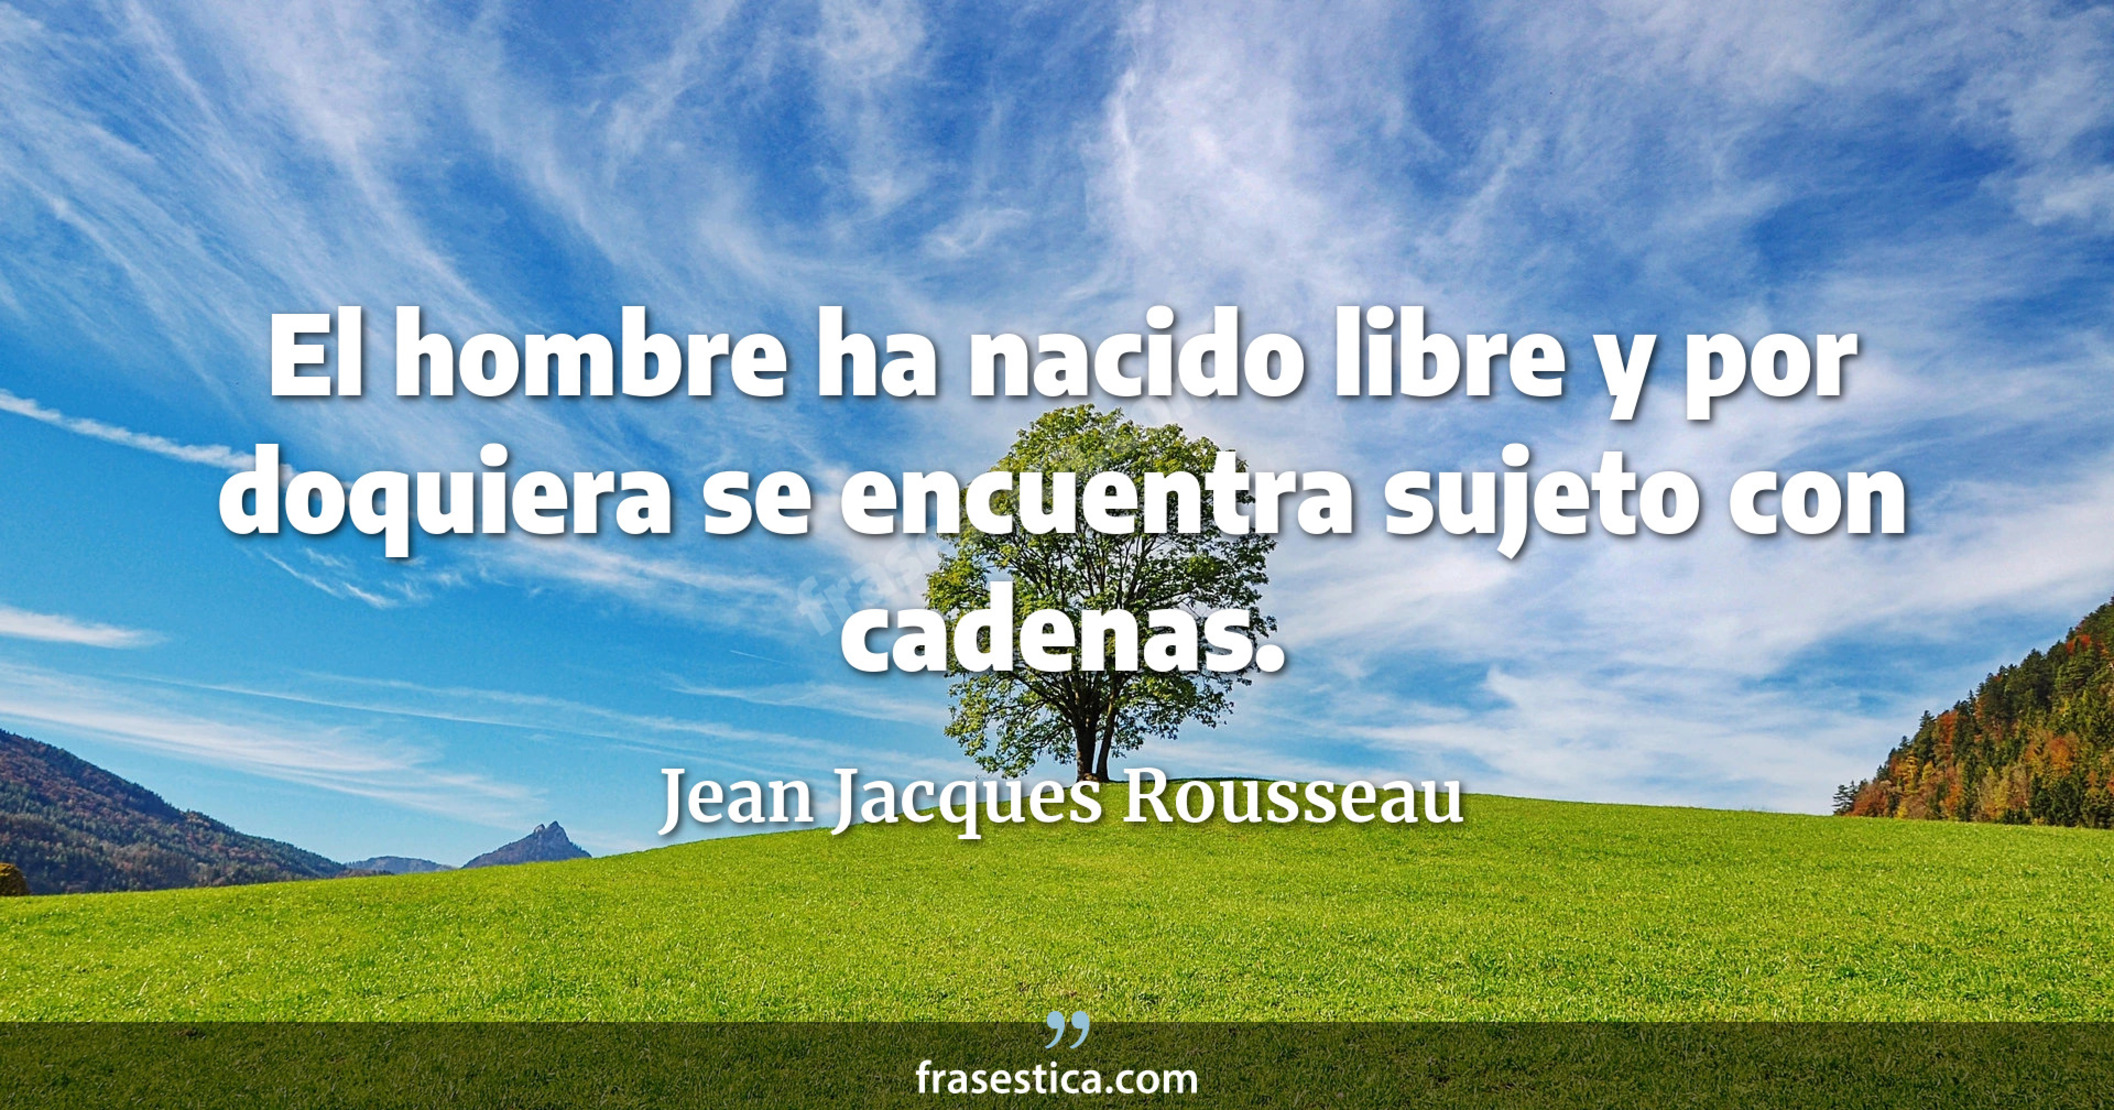 El hombre ha nacido libre y por doquiera se encuentra sujeto con cadenas. - Jean Jacques Rousseau